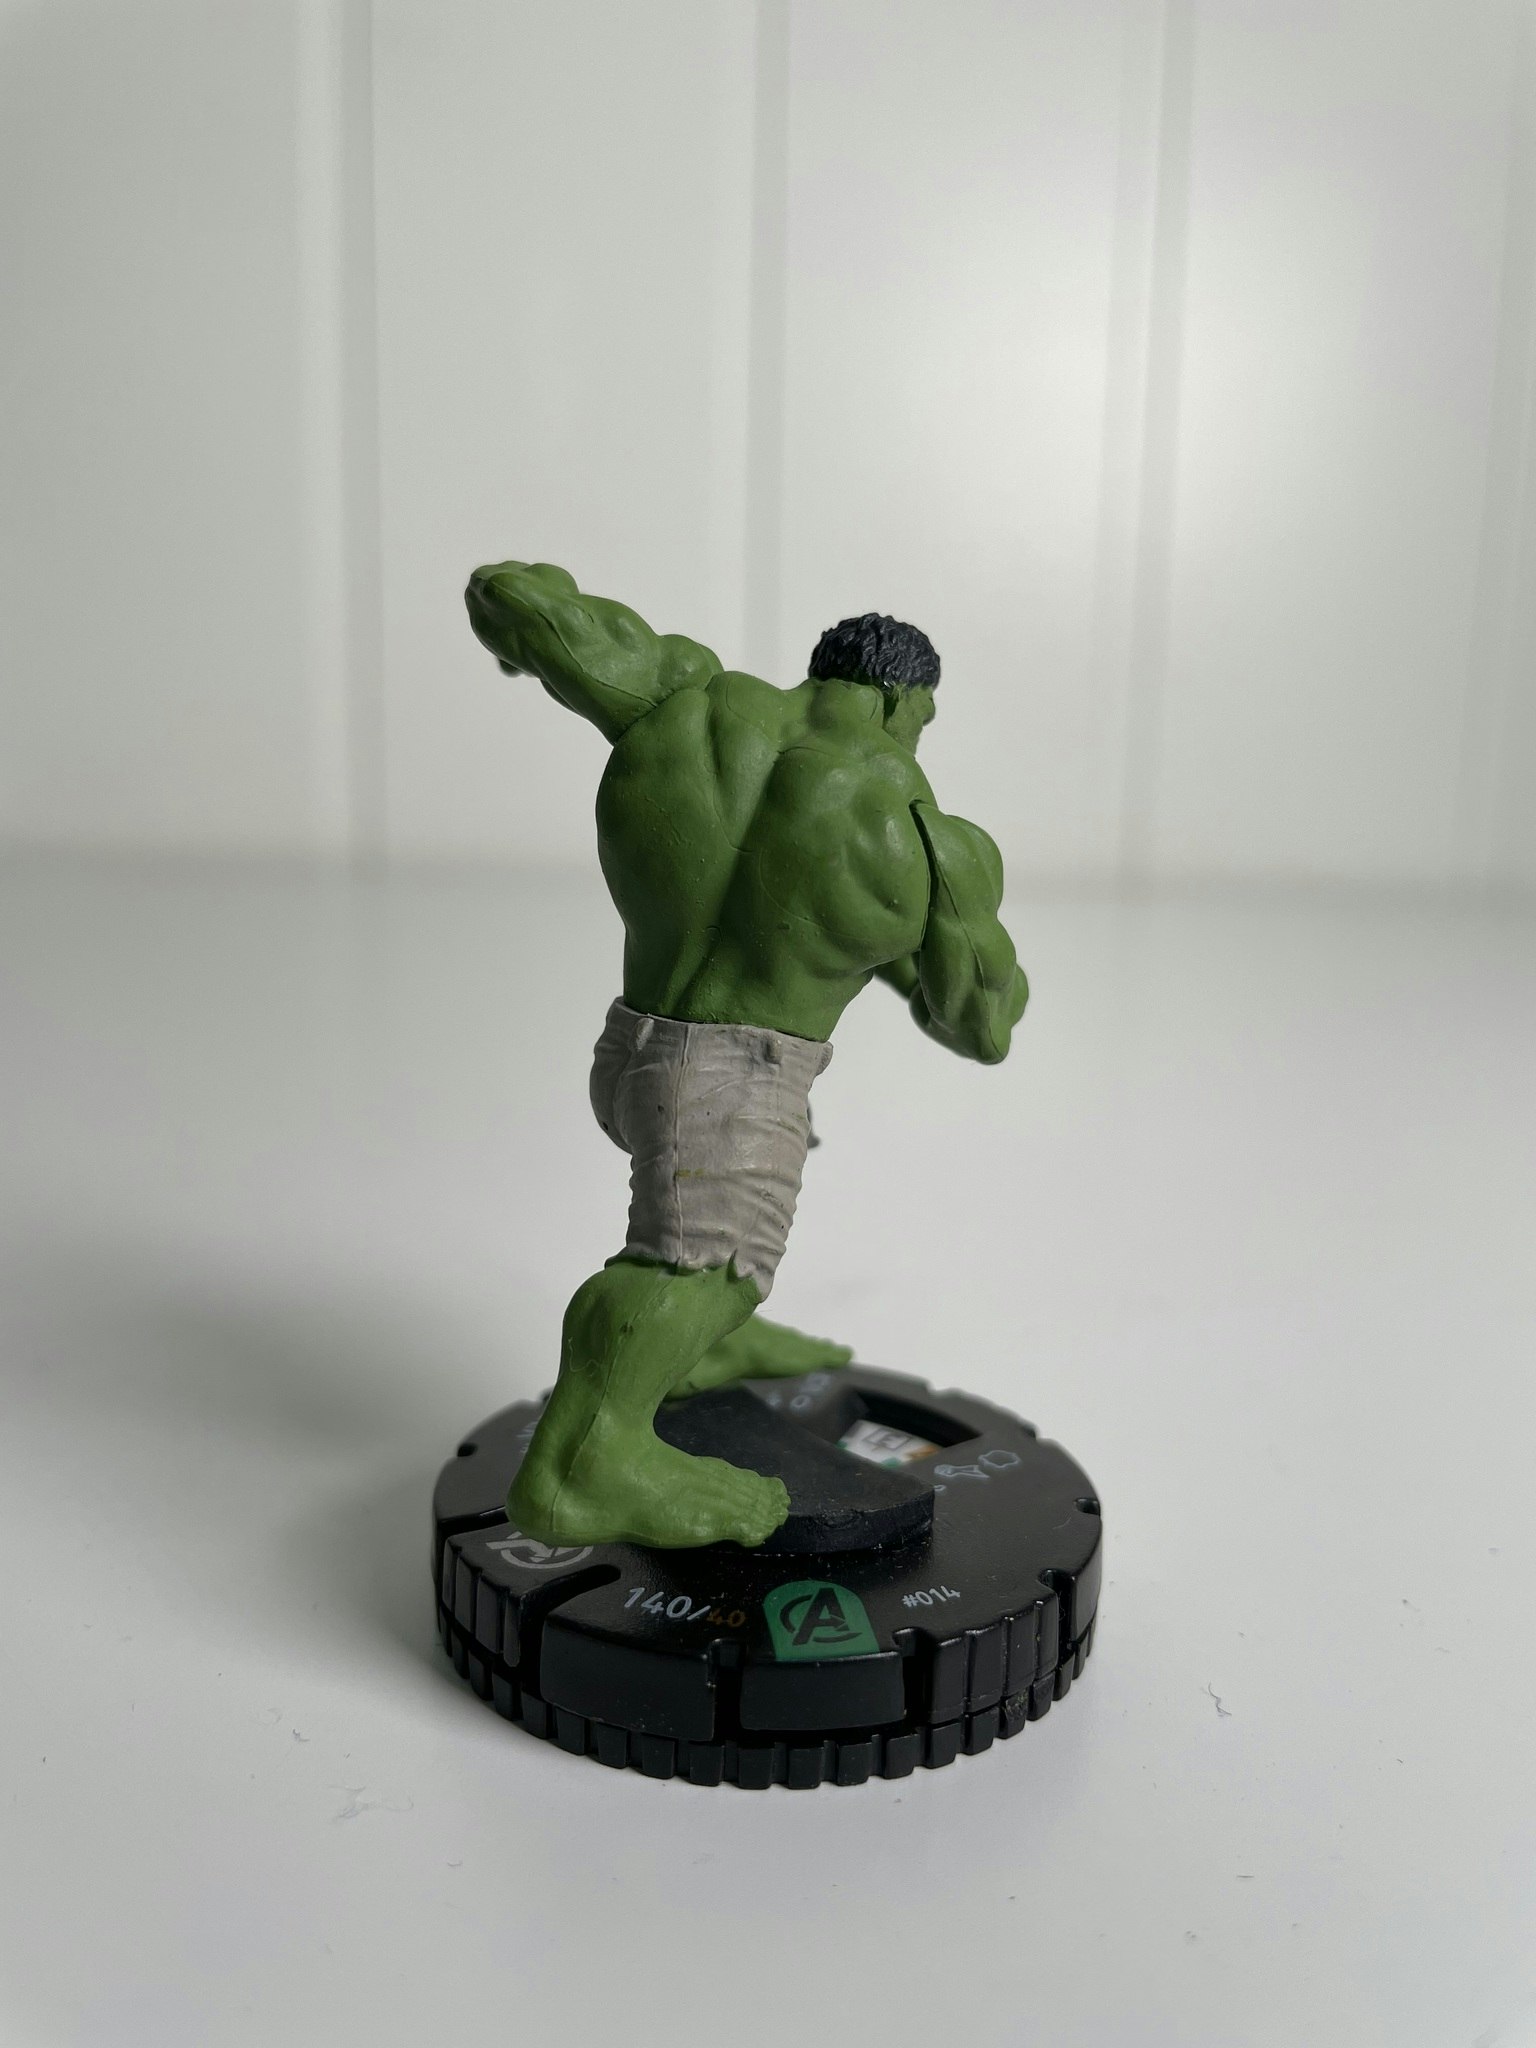 Hulk Heroclix